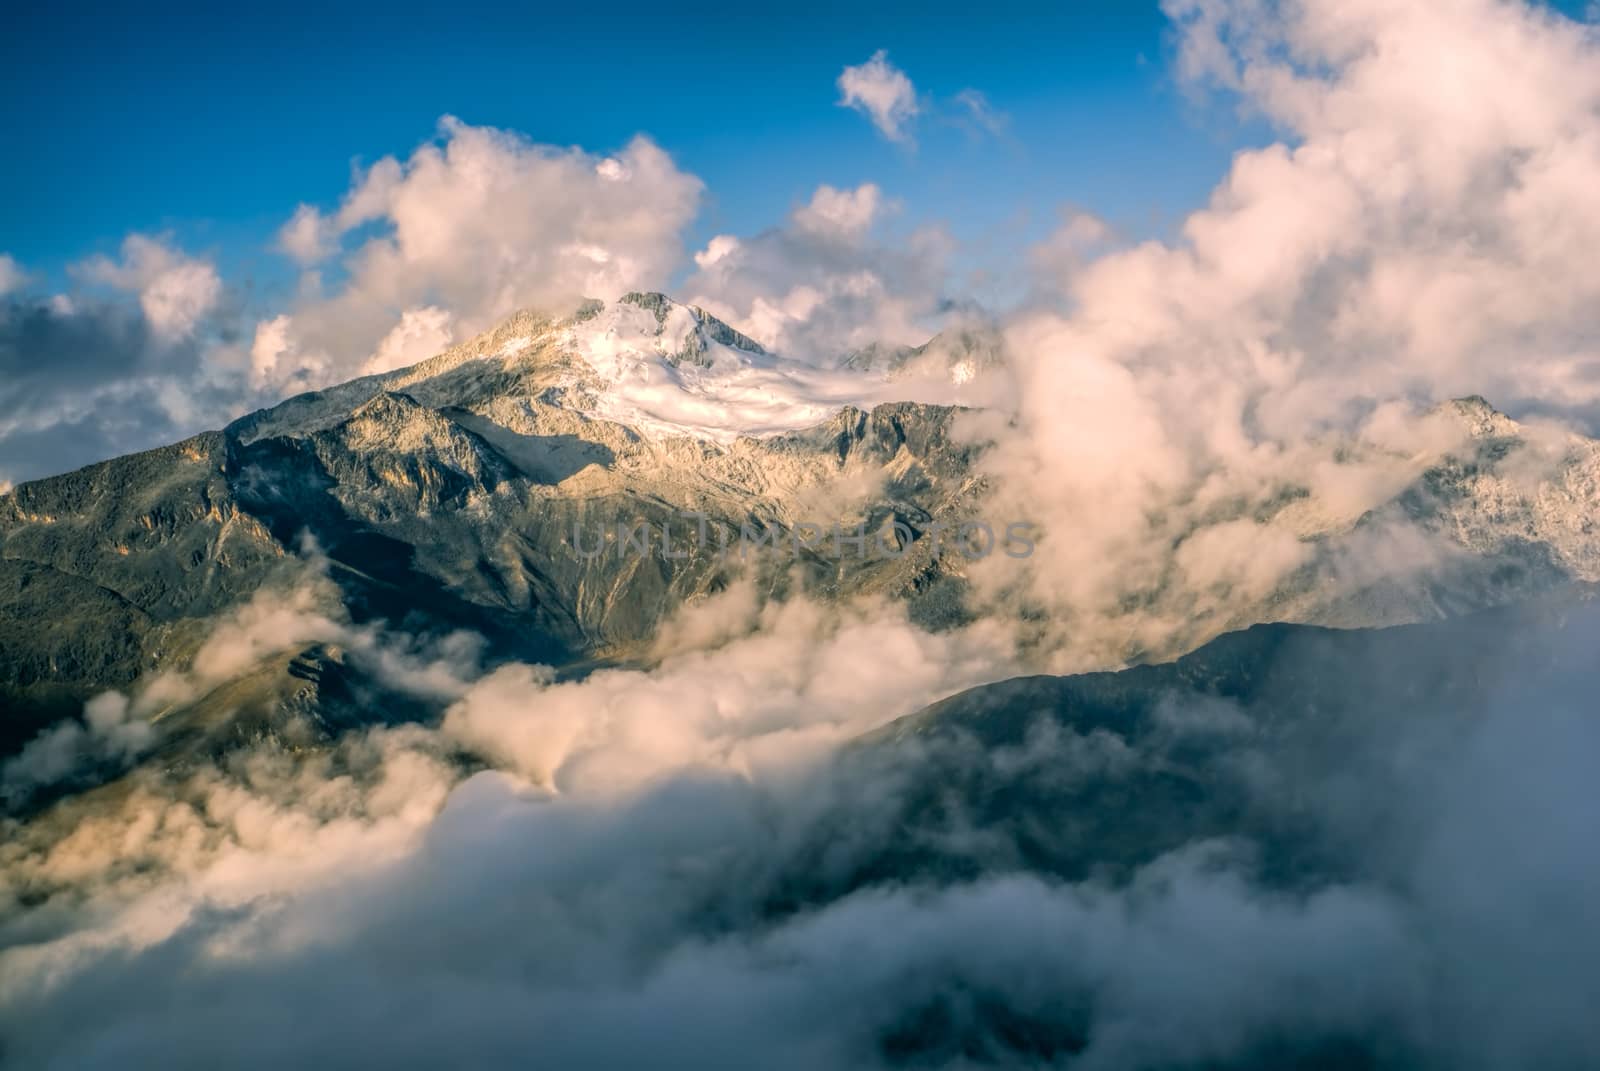 Peak in Andes by MichalKnitl